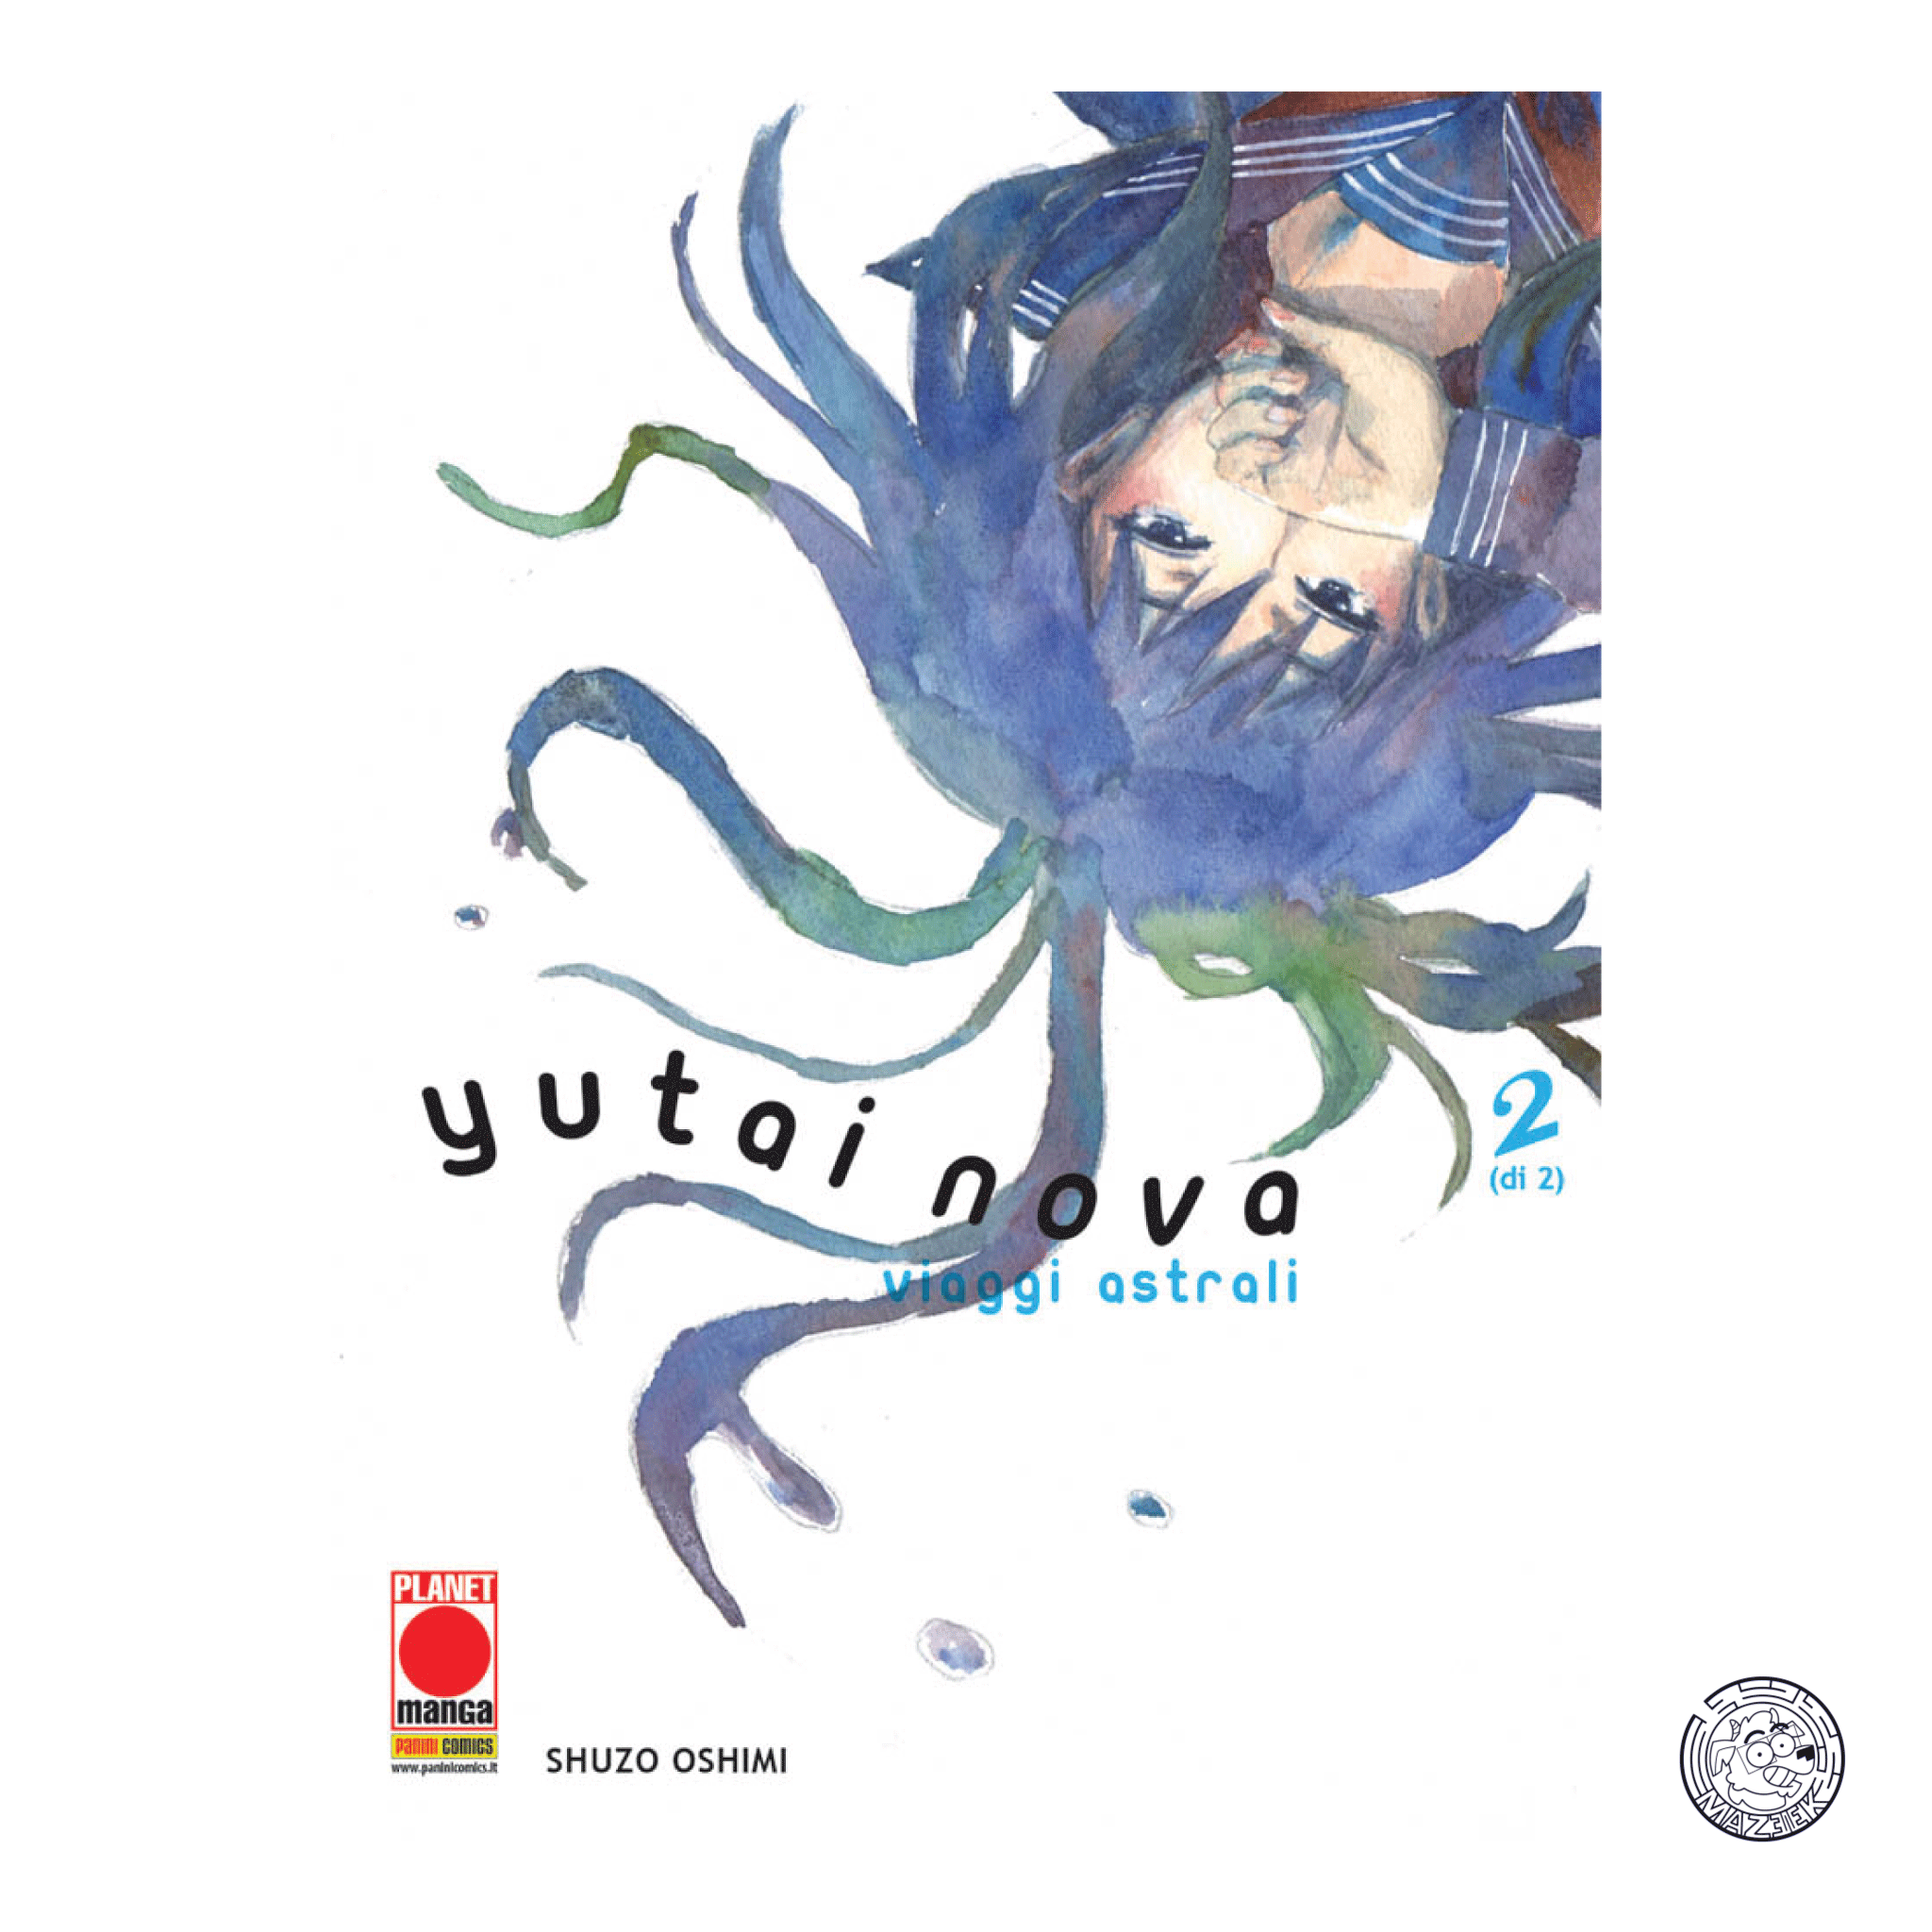 Yutai Nova: Viaggi Astrali 02